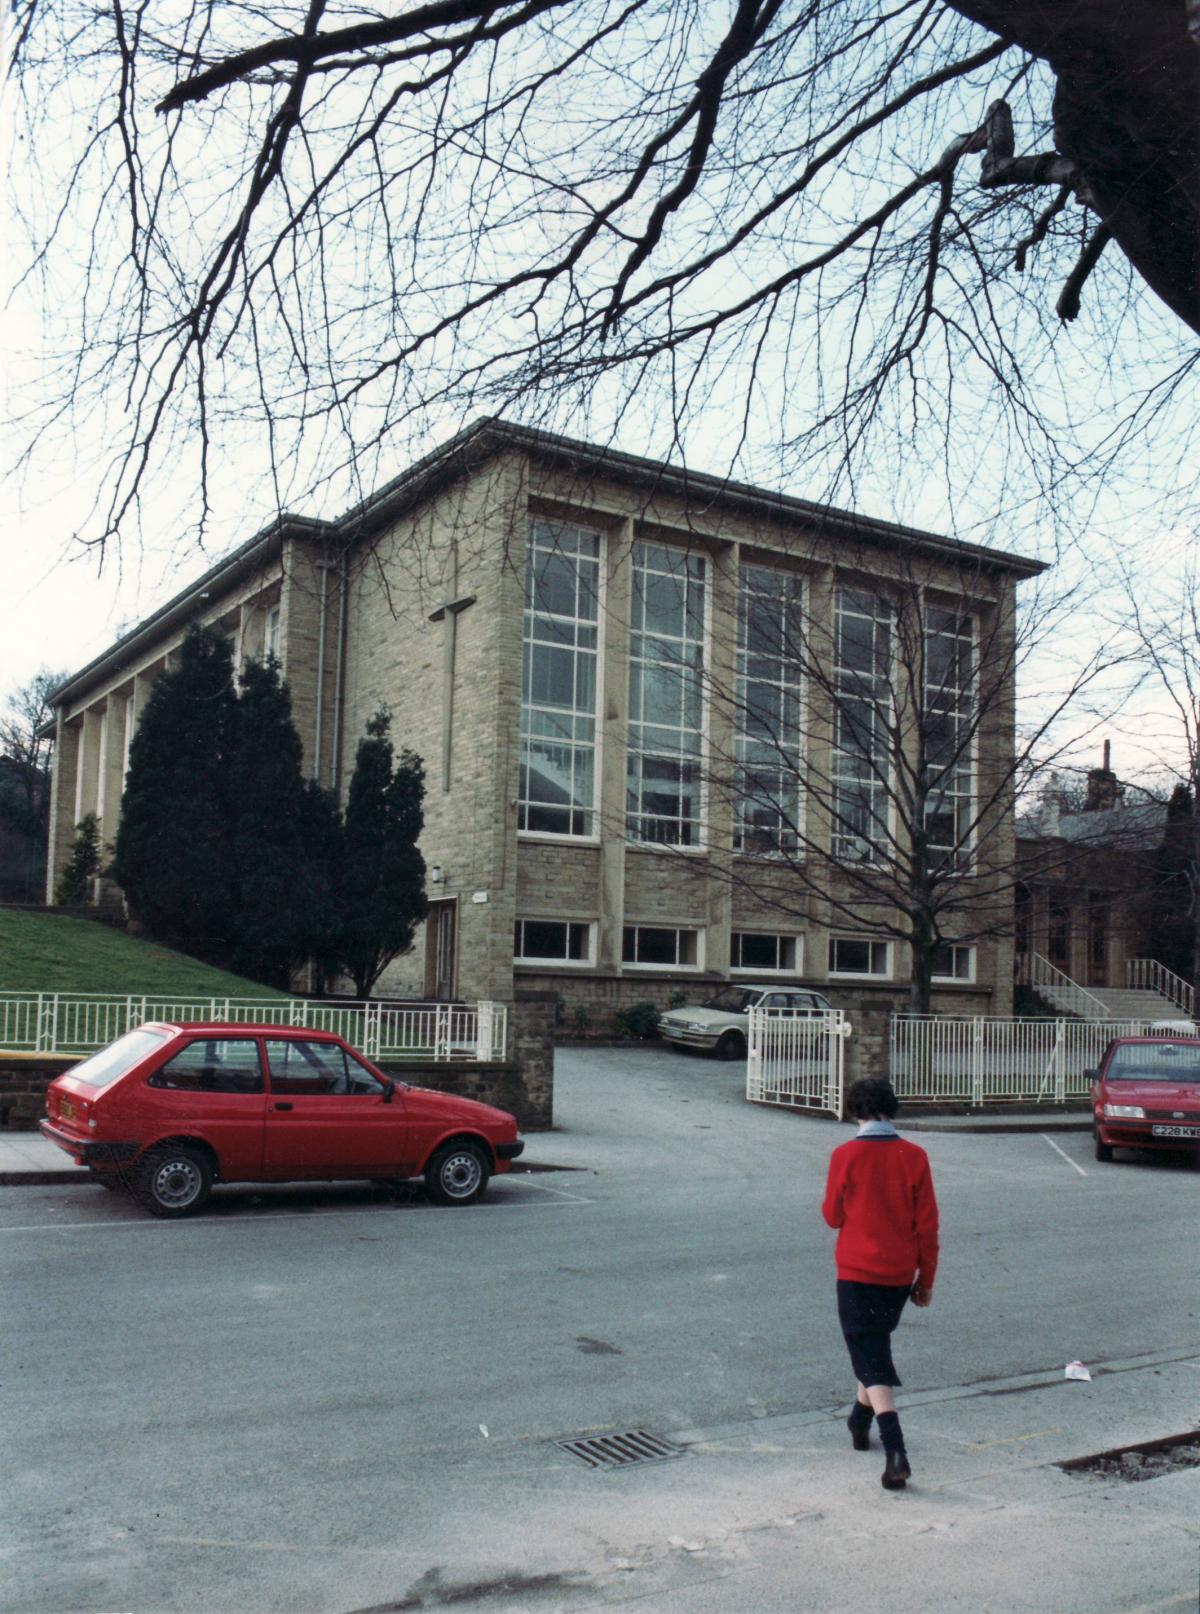 St Joseph's College in 1988